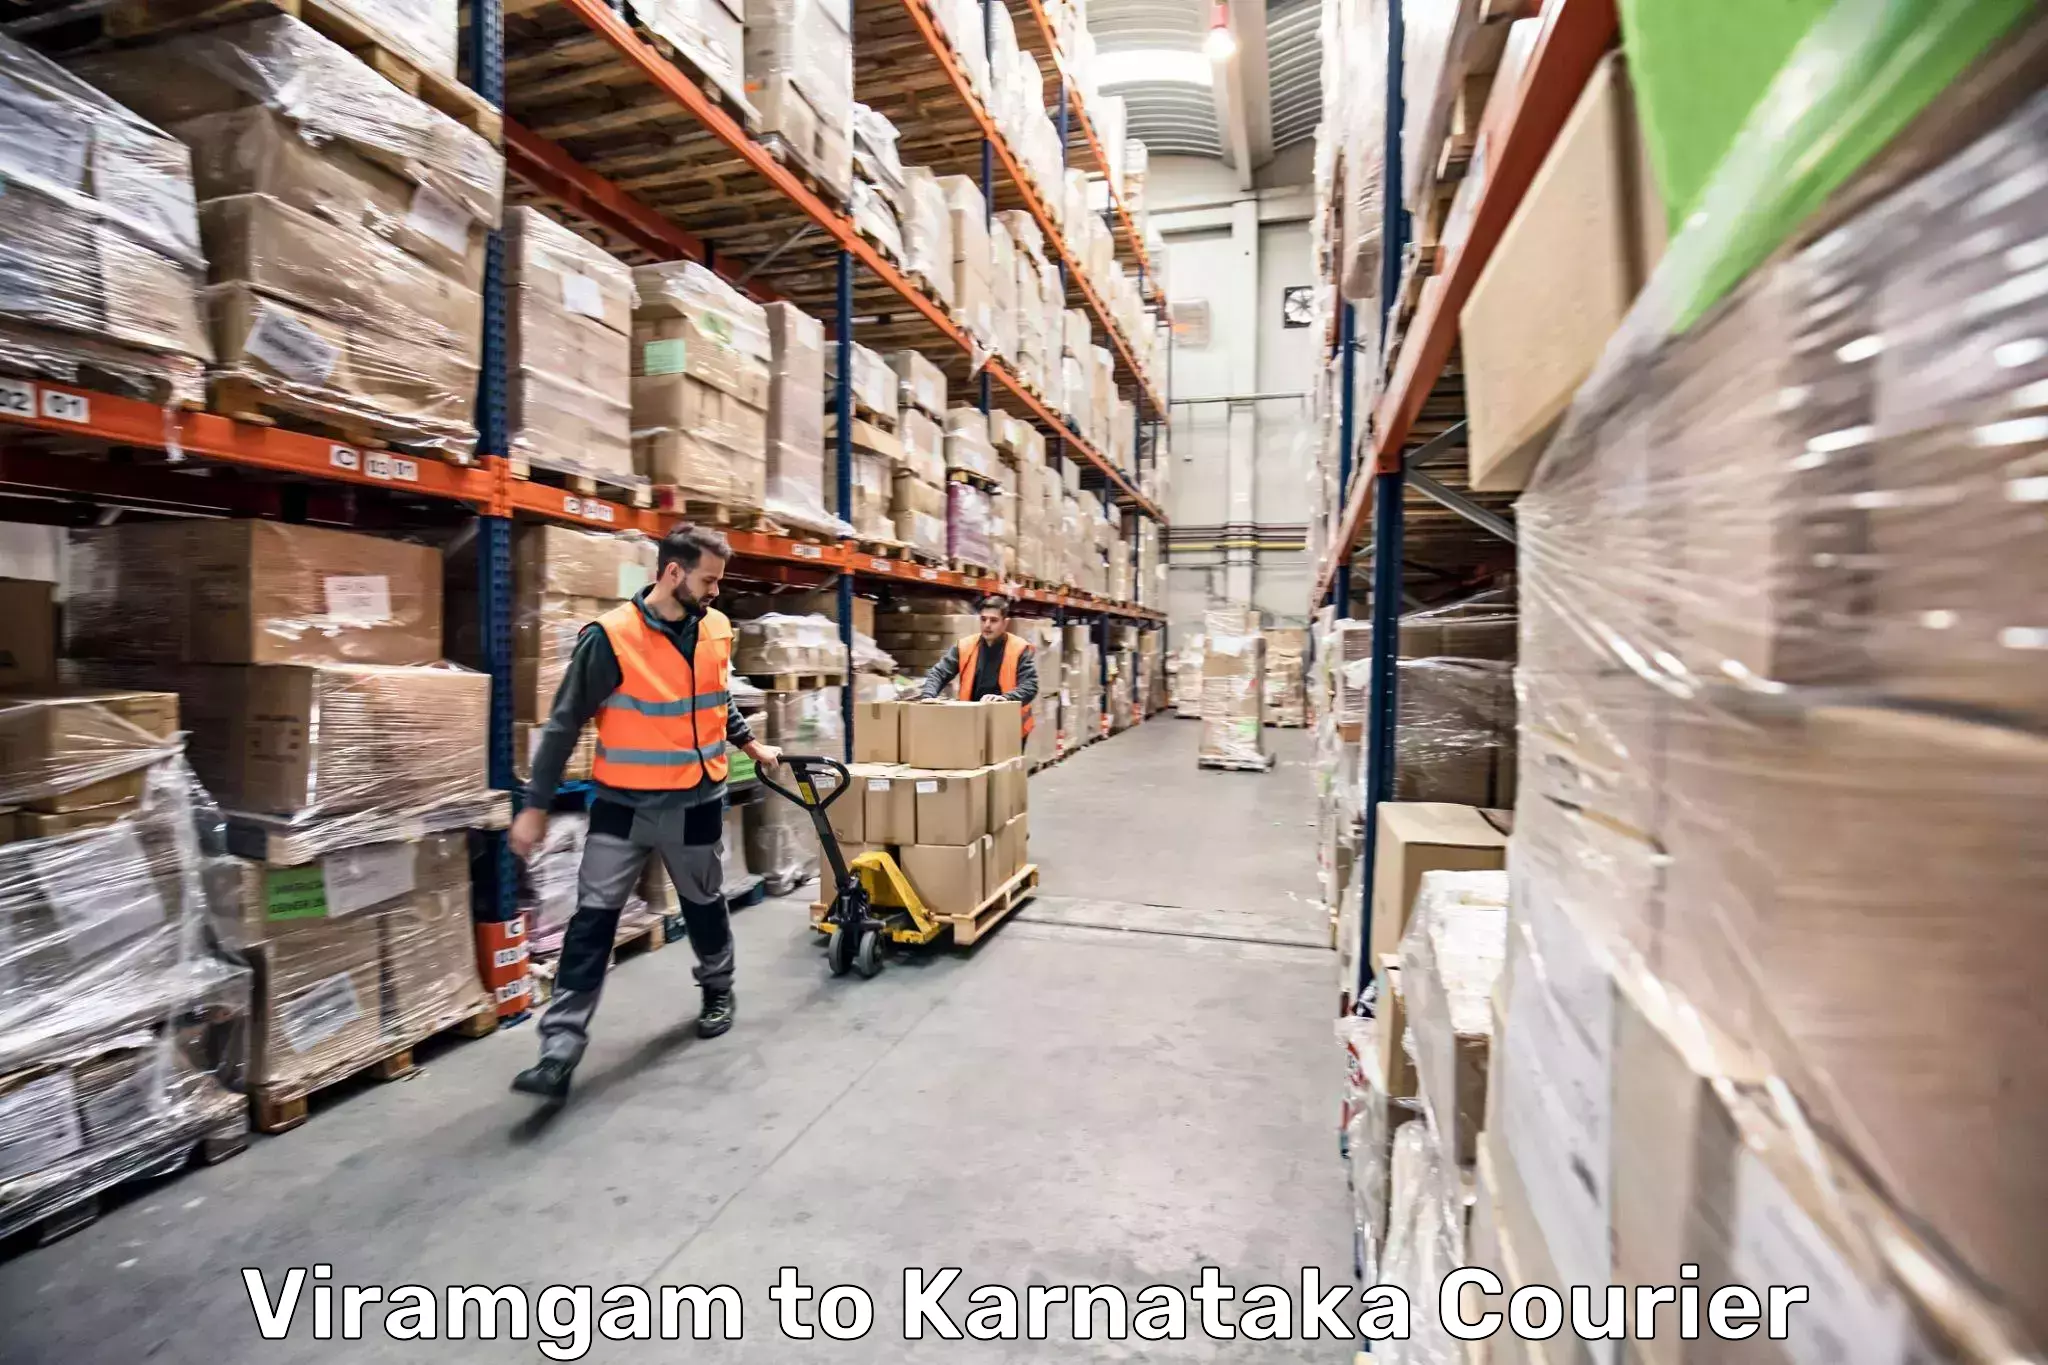 Luggage transport service Viramgam to Mangalore Port